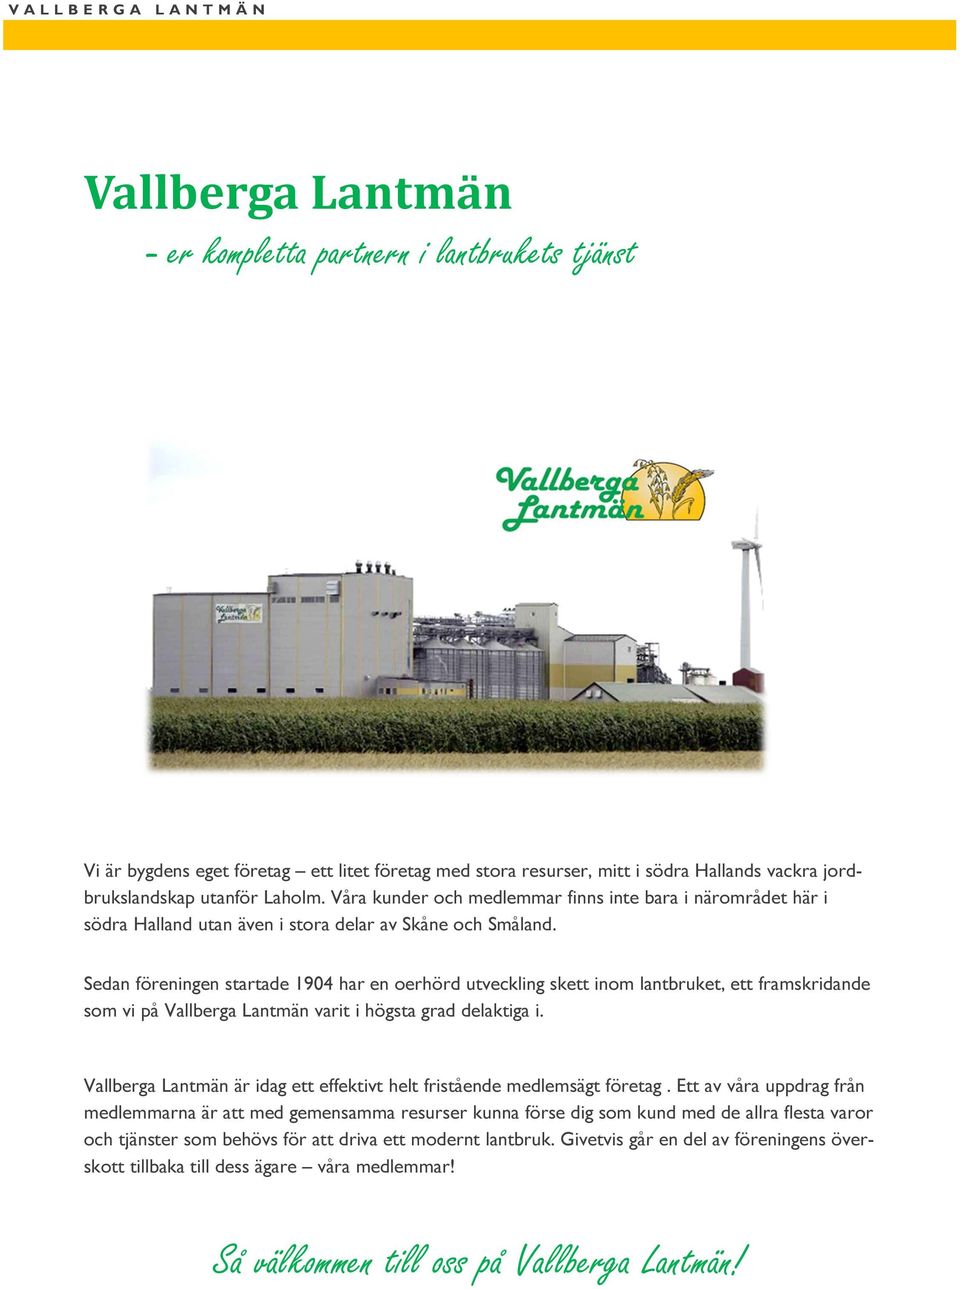 Sedan föreningen startade 1904 har en oerhörd utveckling skett inom lantbruket, ett framskridande som vi på Vallberga Lantmän varit i högsta grad delaktiga i.